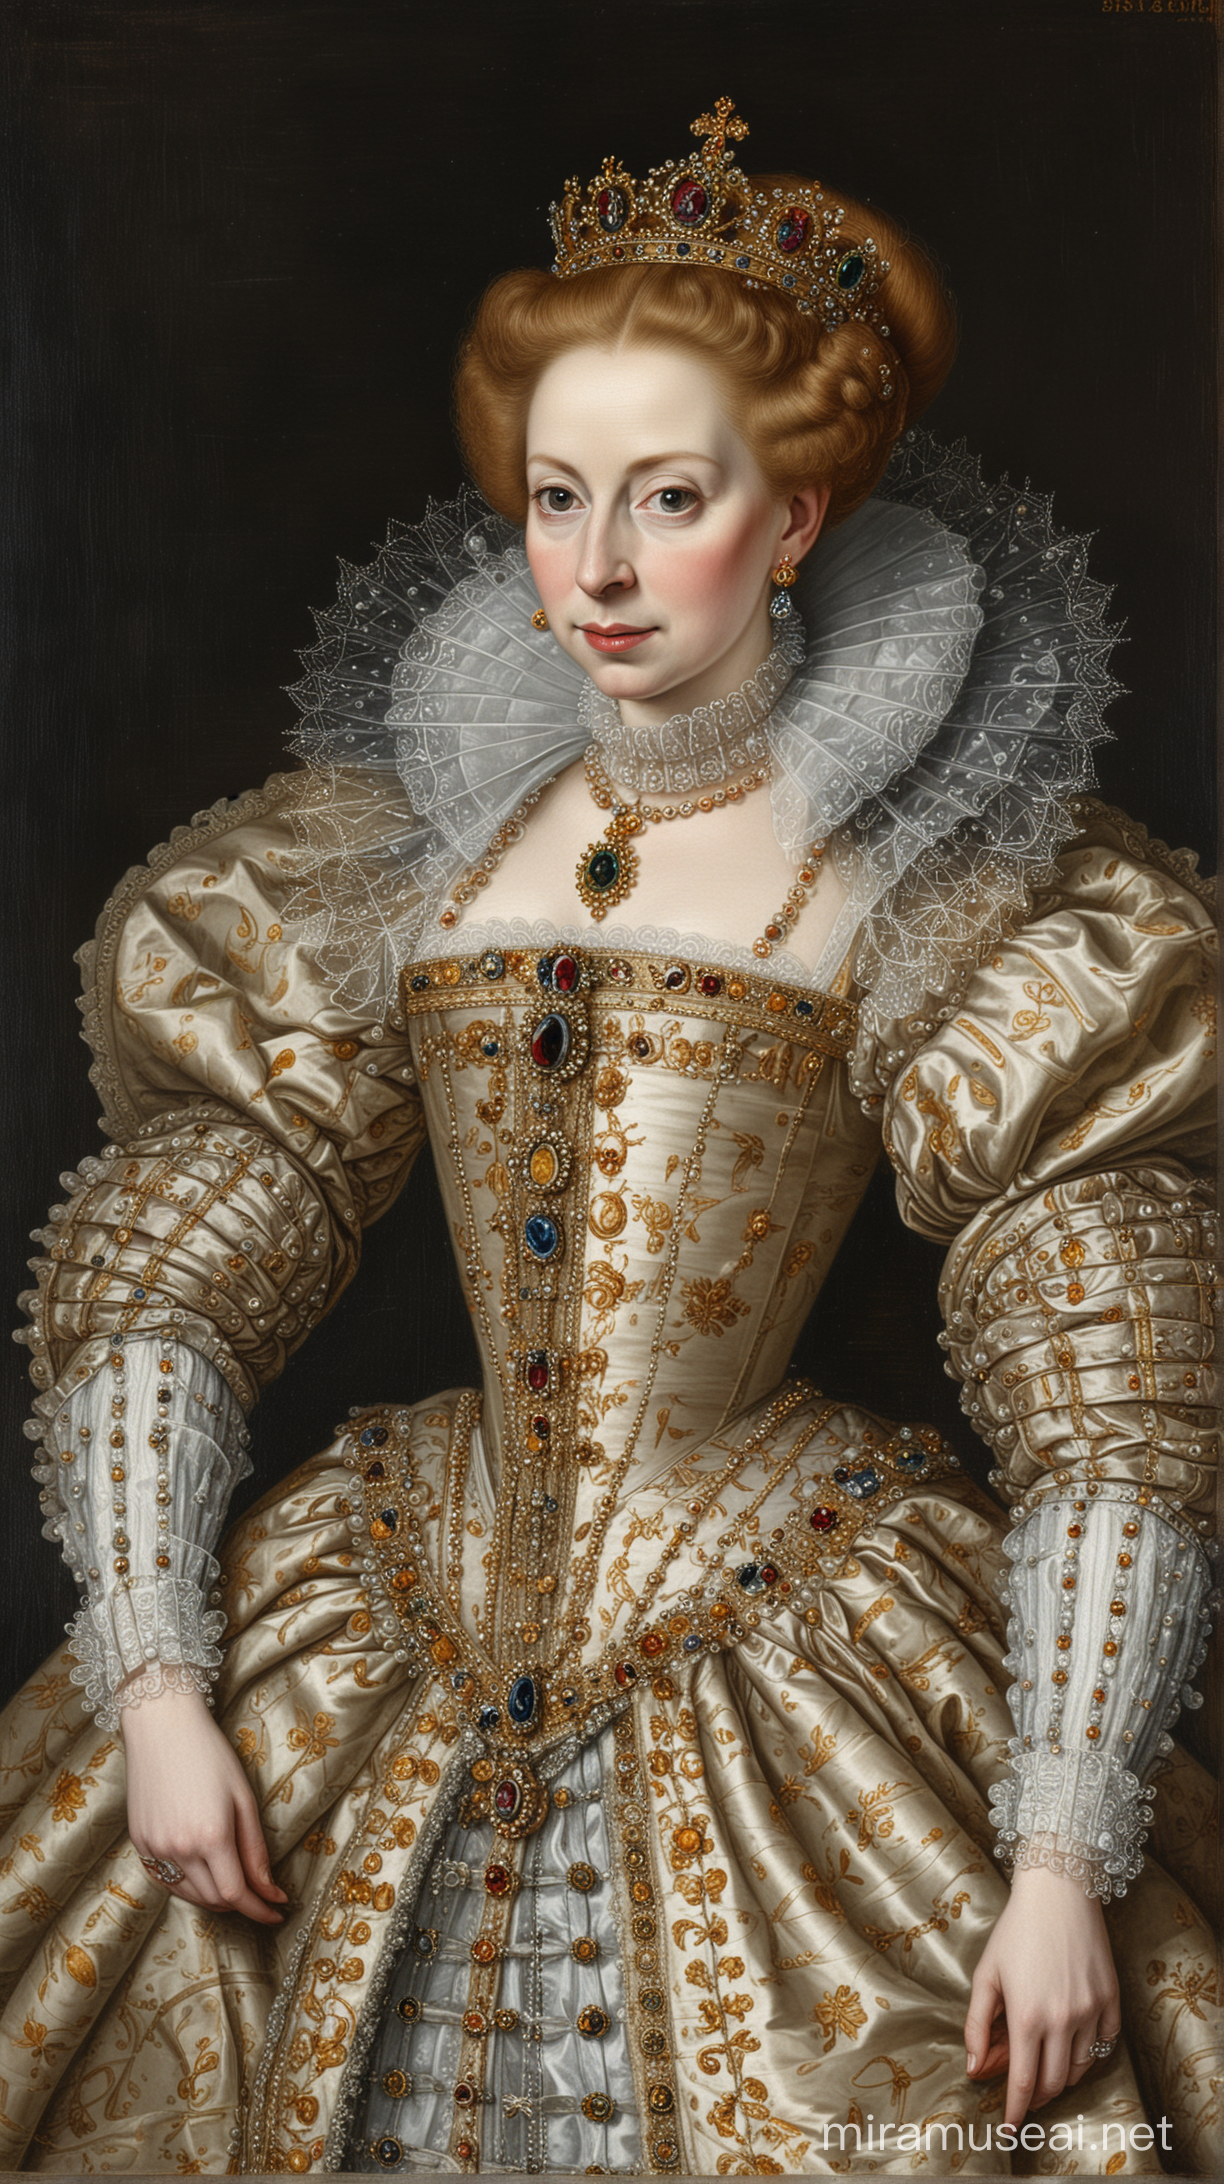 Regal Portrait of Queen Elizabeth I in Royal Attire